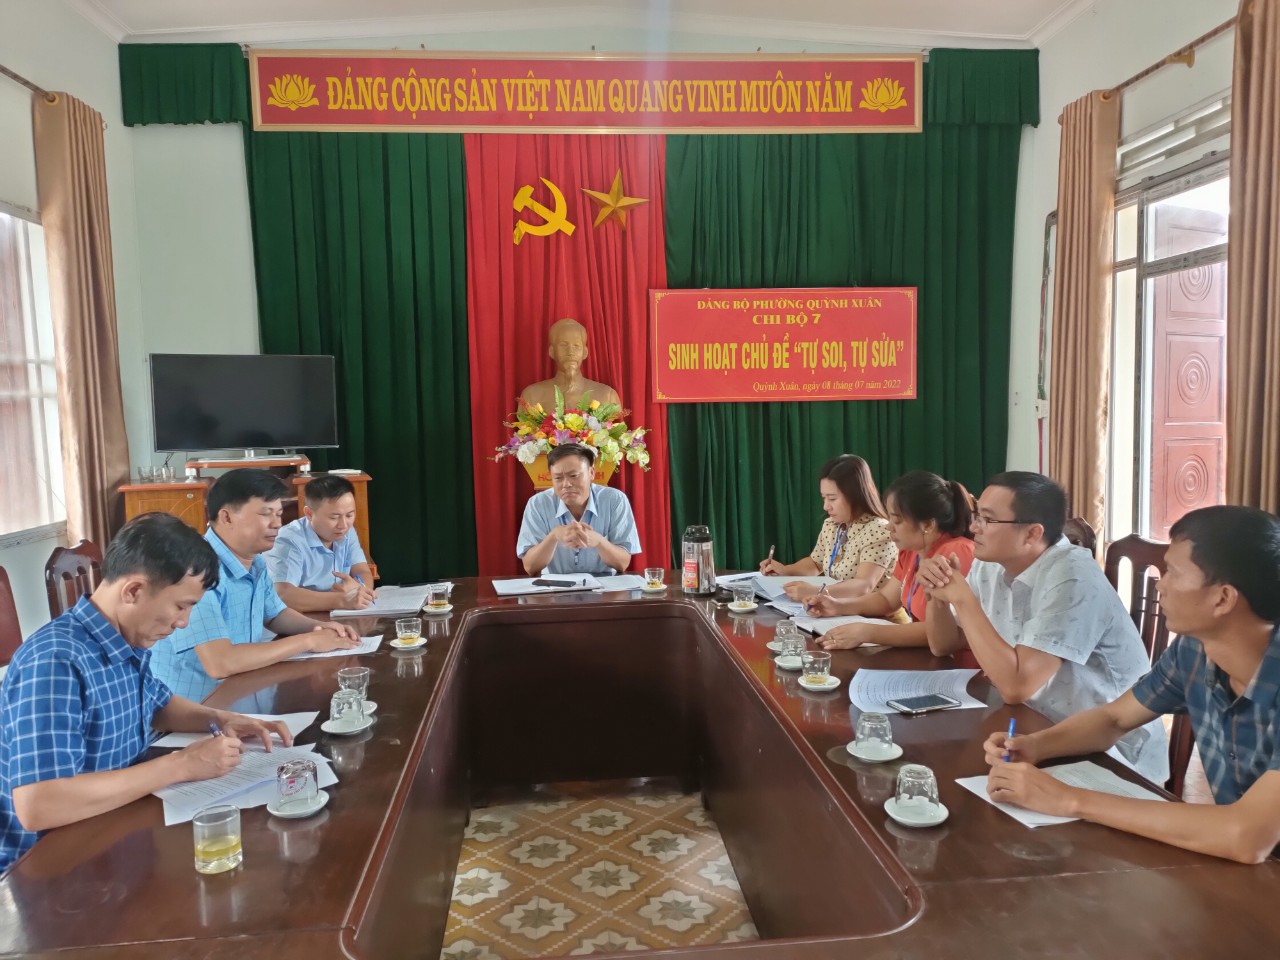 Chi bộ 7, Đảng ủy phường Quỳnh Xuân tổ chức buổi sinh hoạt chuyên đề “Tự soi, tự sửa”